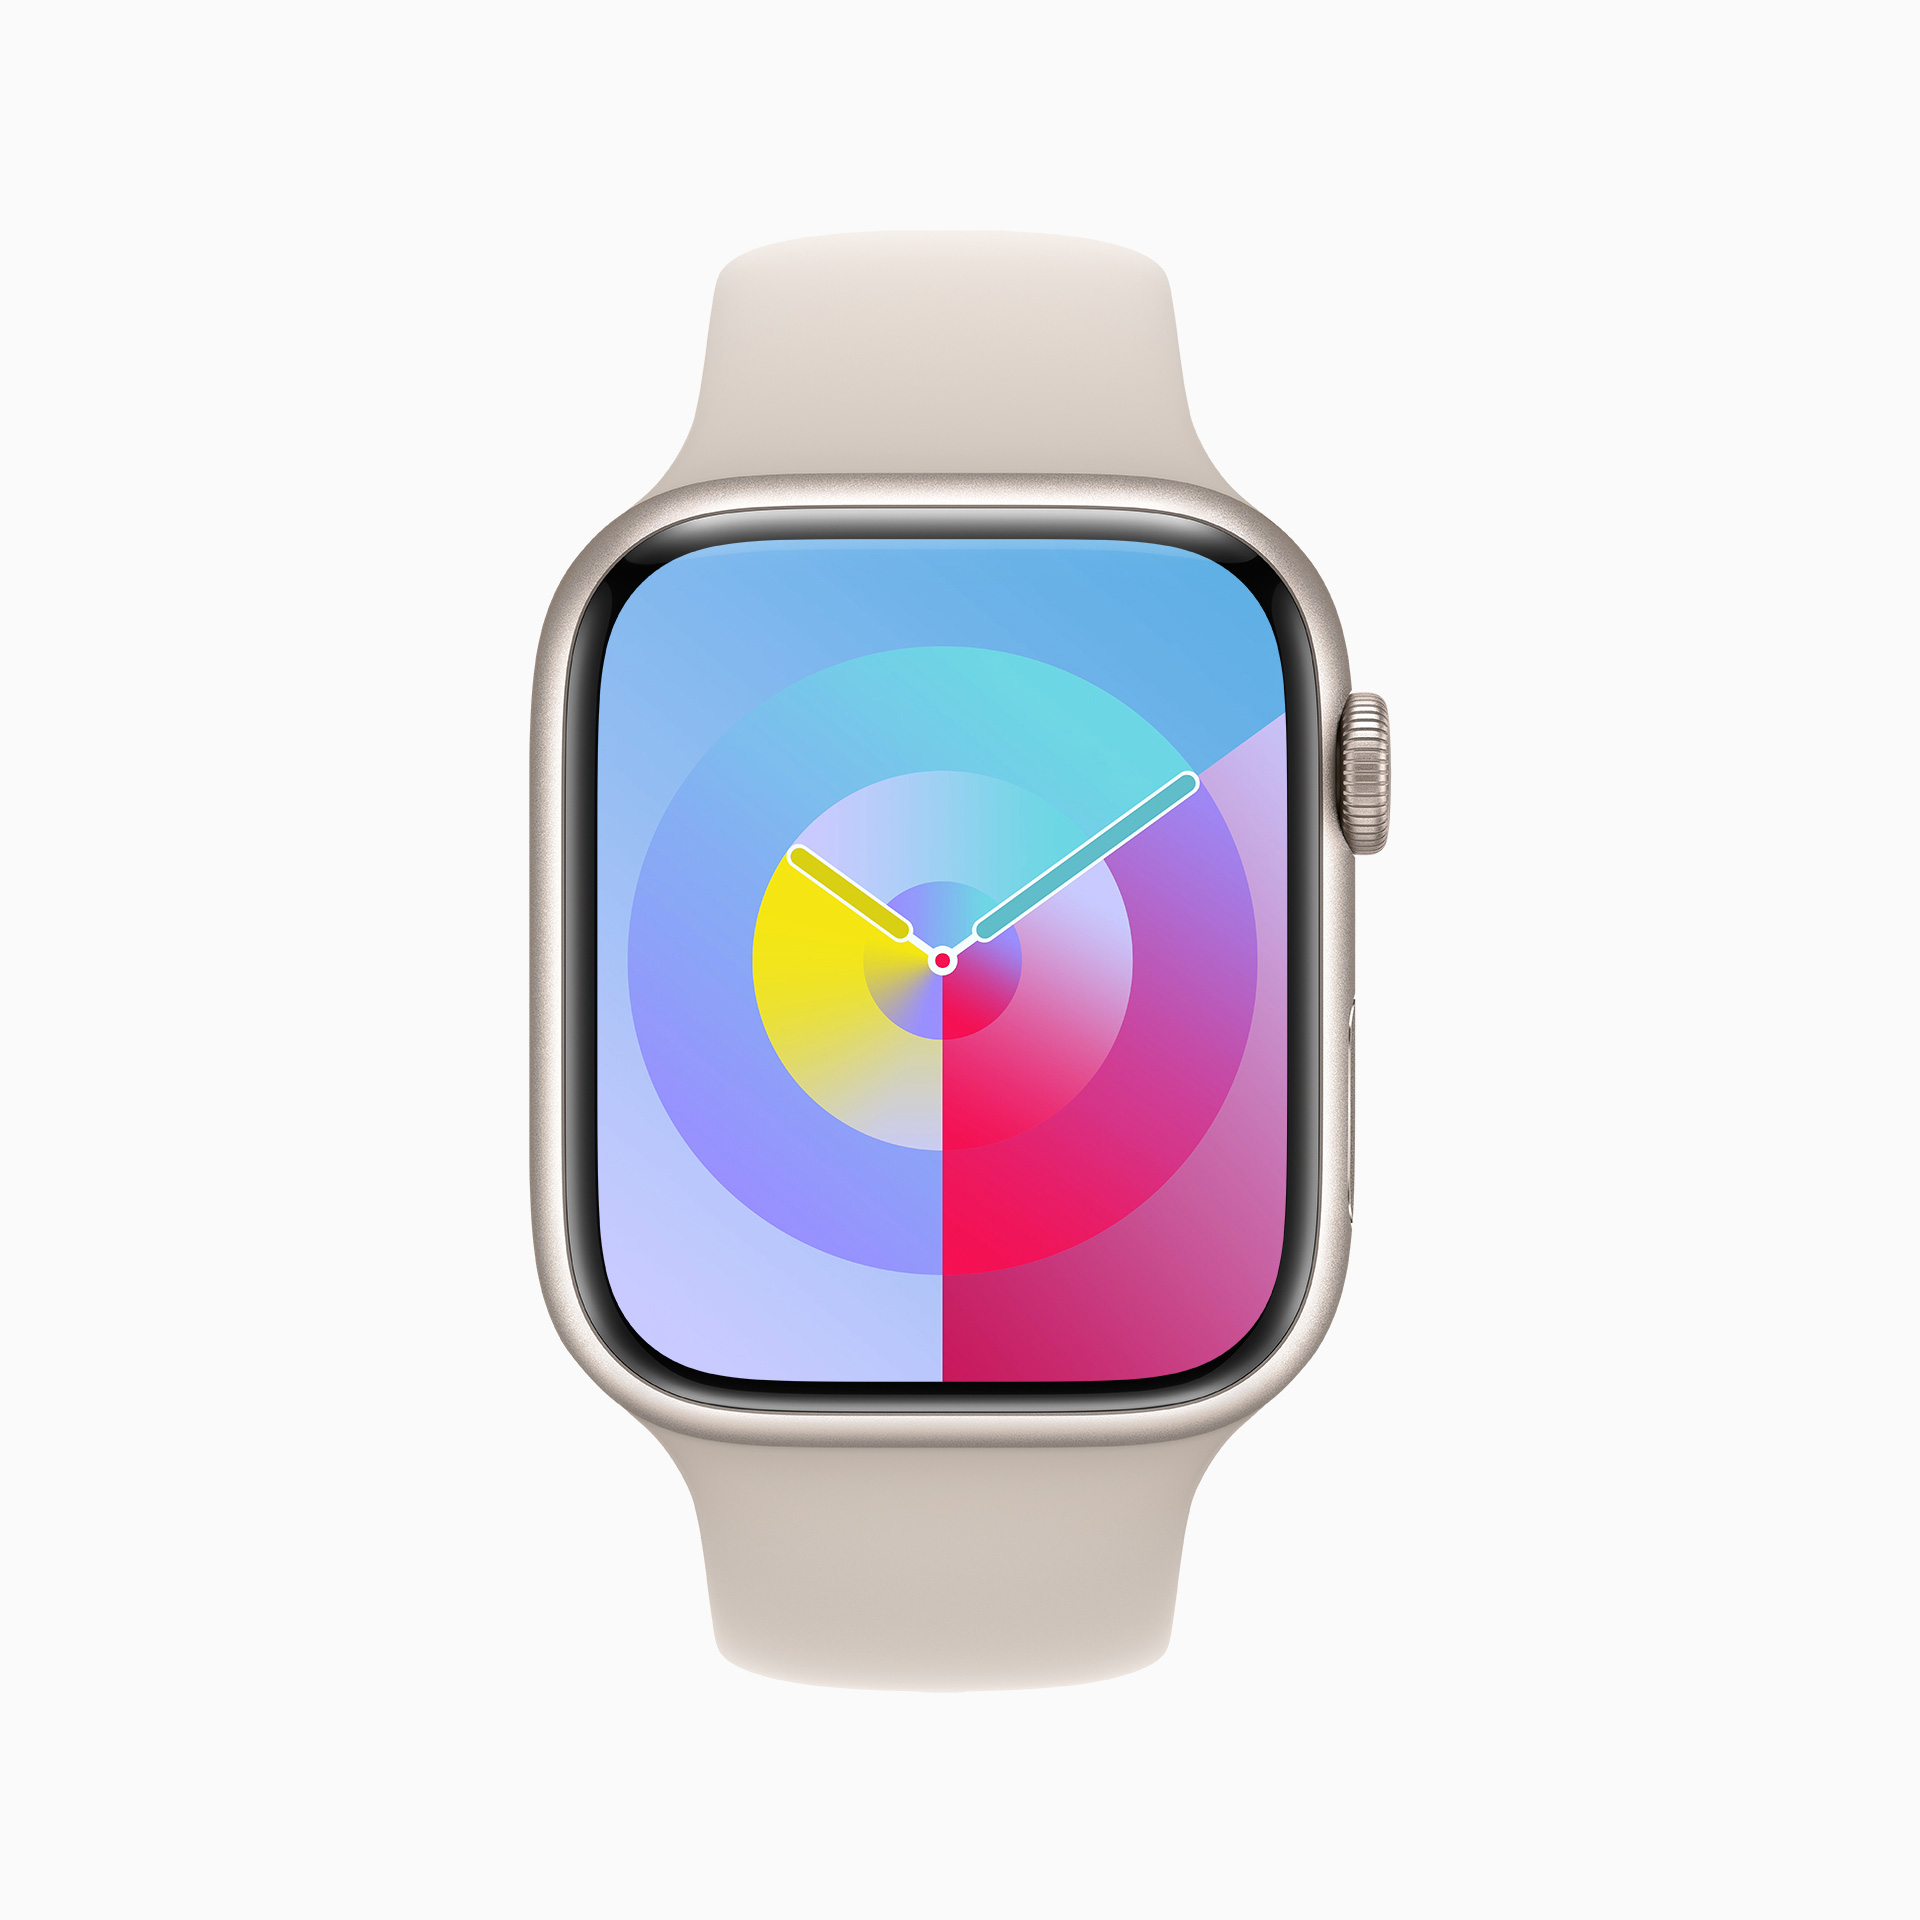 Apple Watchのマイルストーンとなるアップデート、watchOS 10が登場 